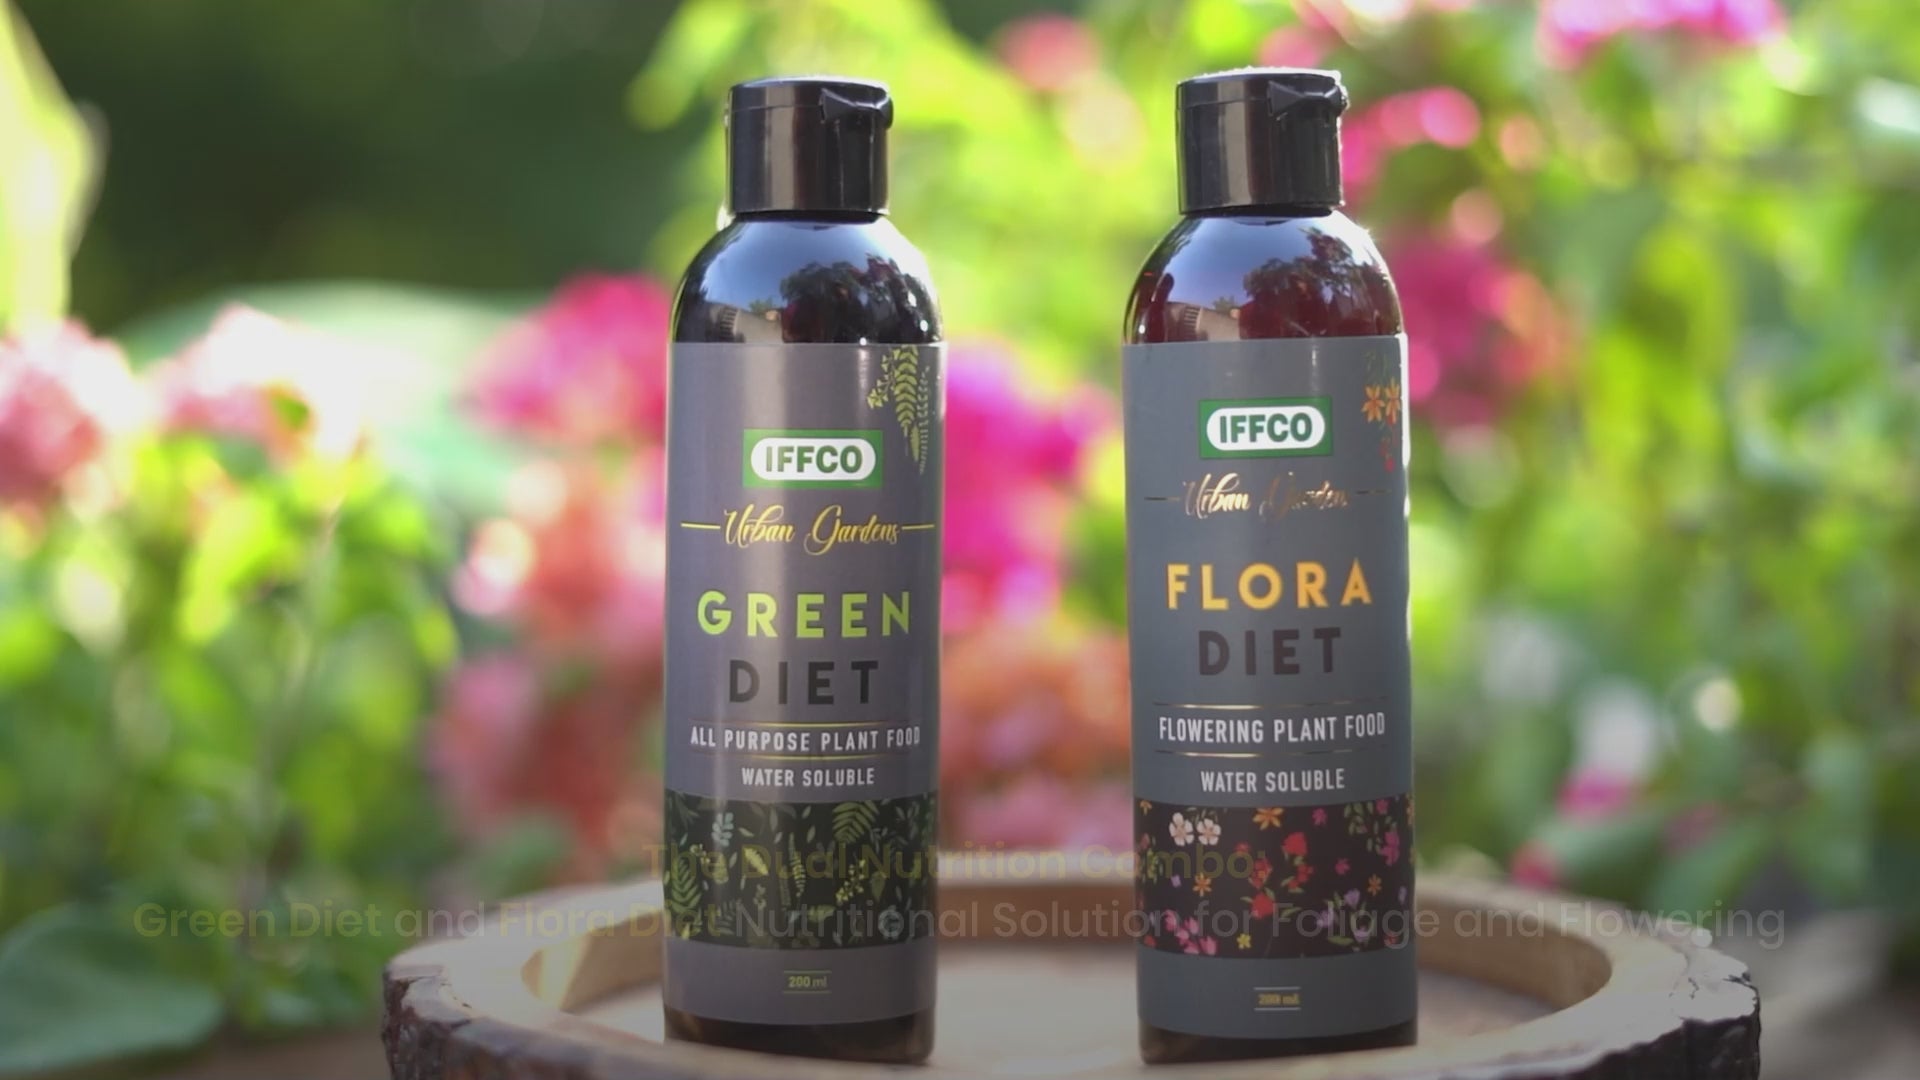 Green Diet + Flora Diet, Water Soluble Liquid